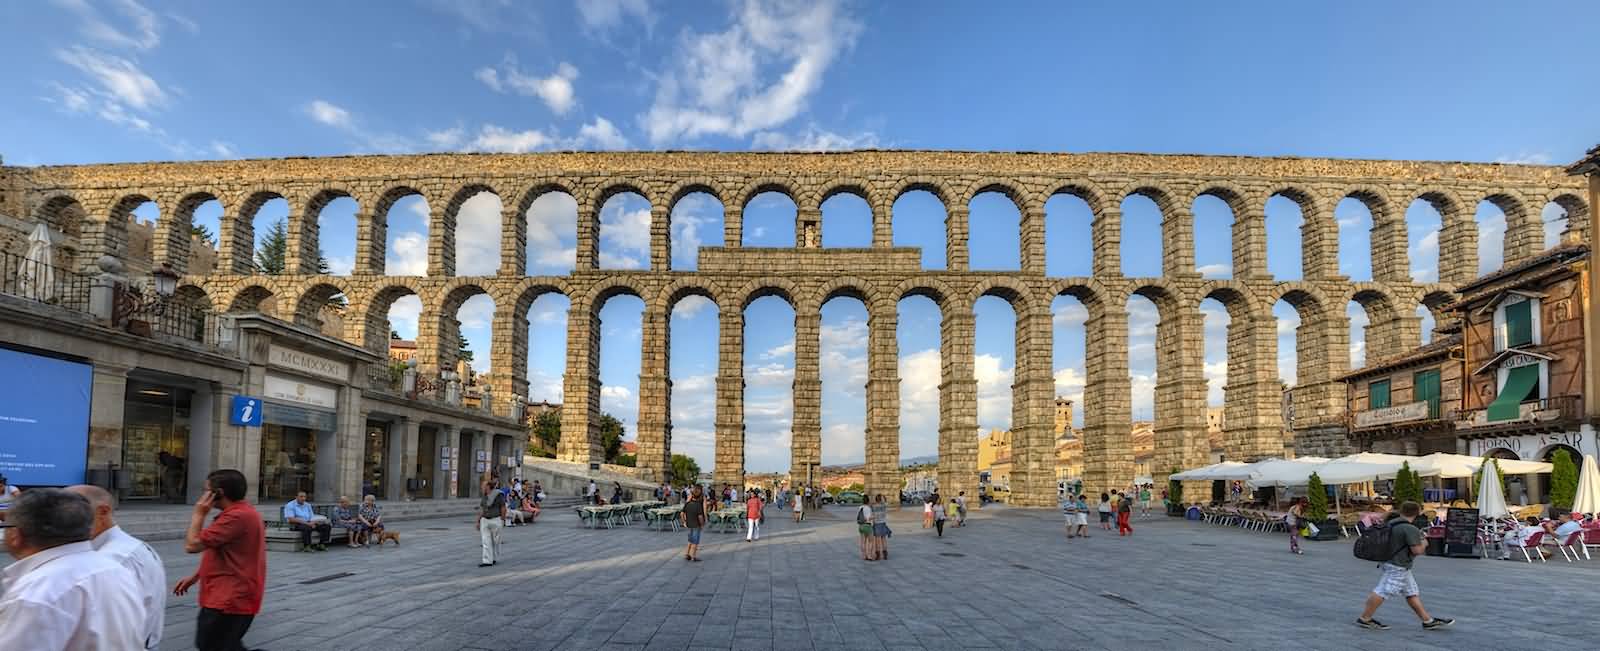 Aqueduct Of Segovia Full View